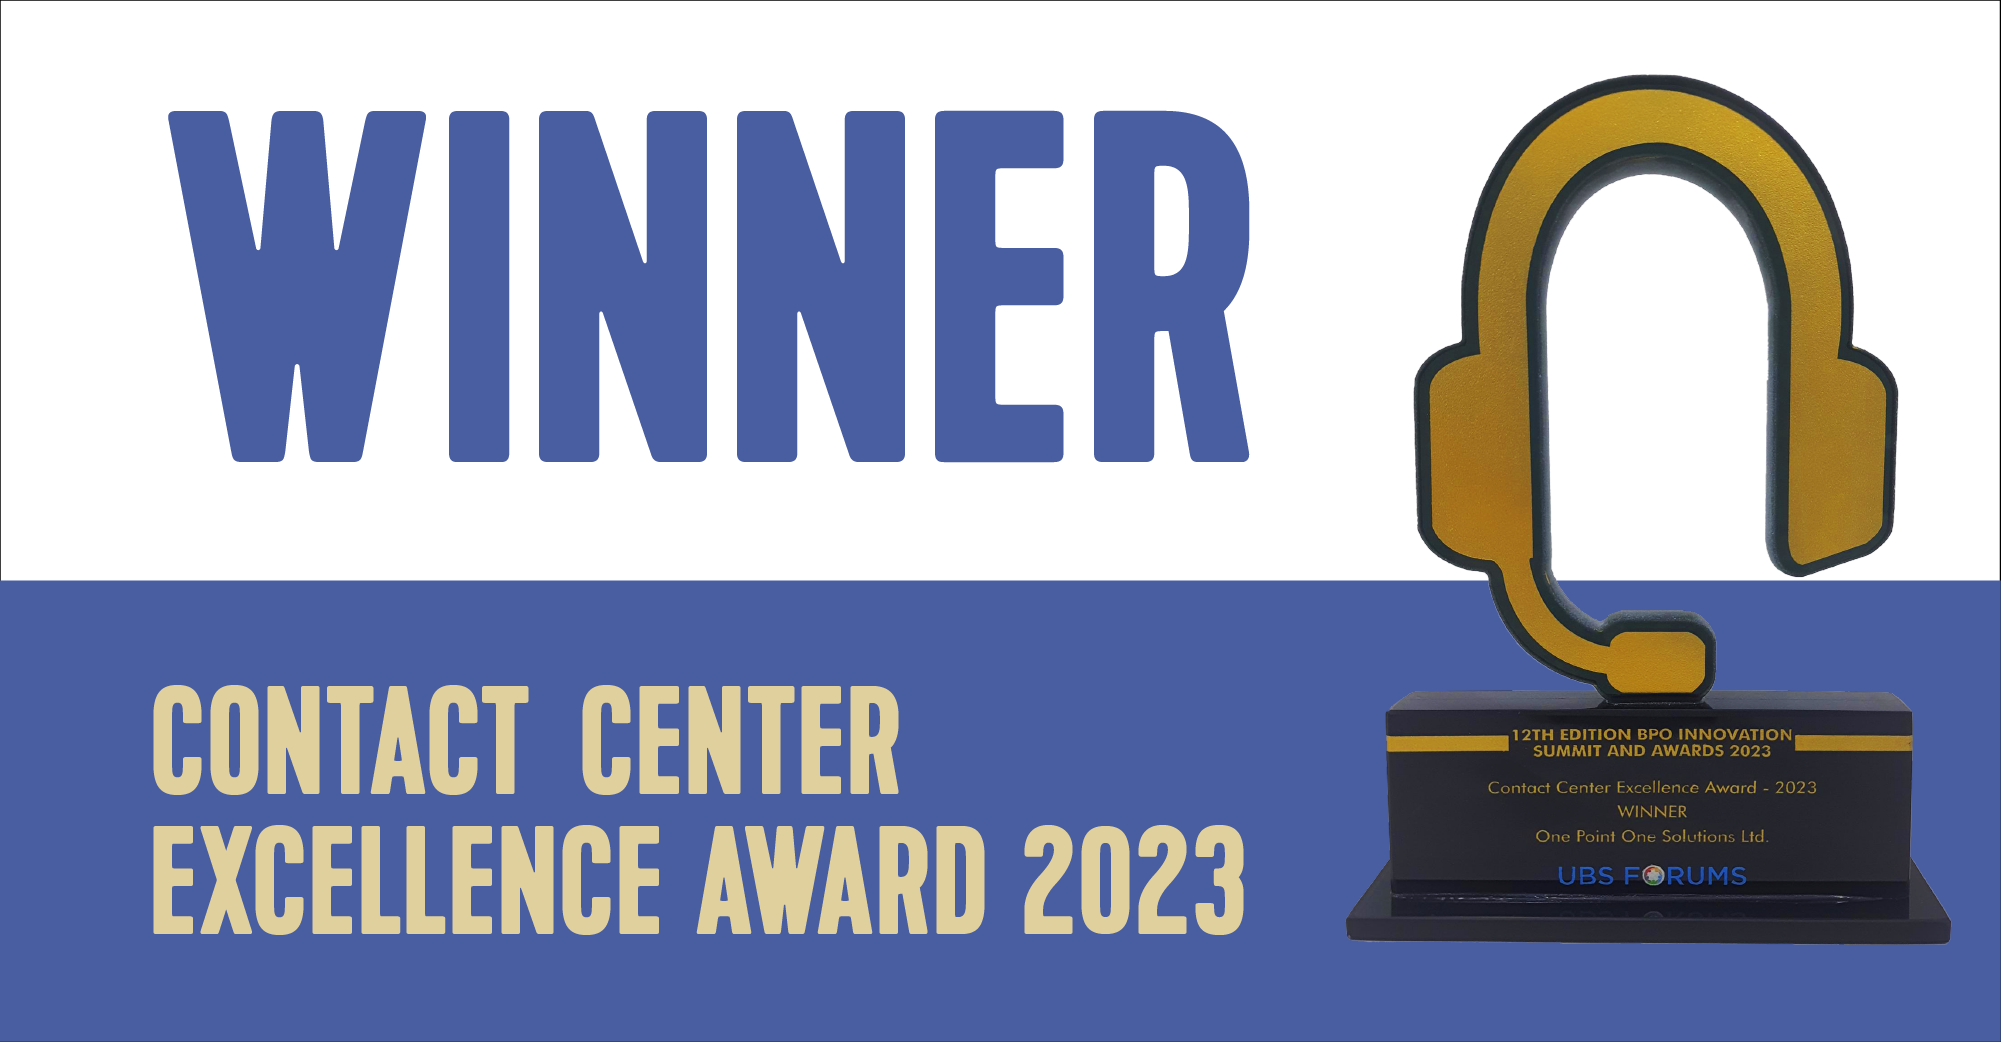 Contact Center Excellence Award -2023